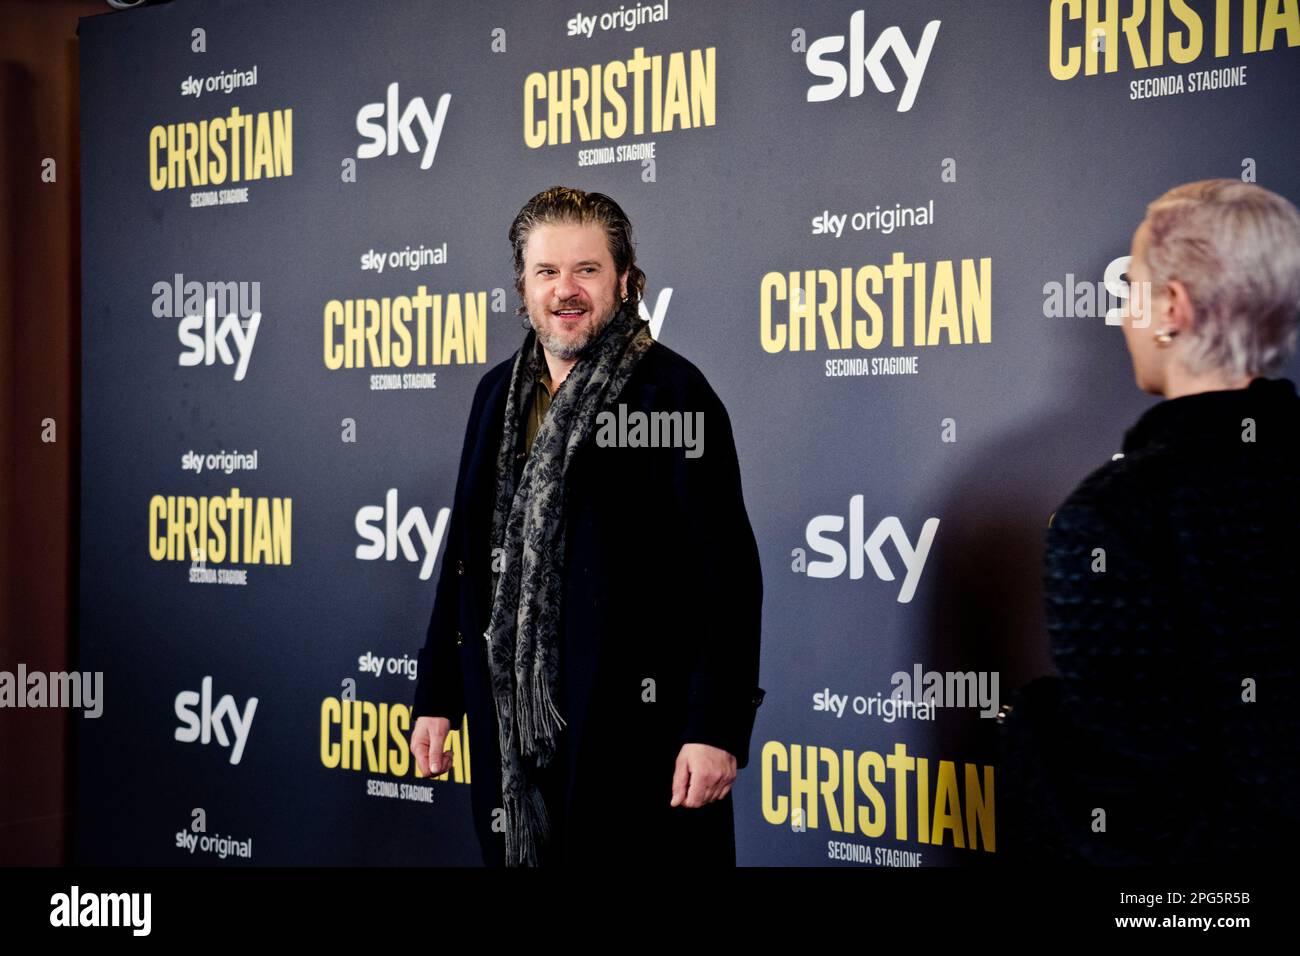 Rome, Italy, 20th March 2023, Edoardo Pesce attends the premiere of 'Christian - seconda stagione' at Cinema Barberini (Photo credits: Giovanna Onofri Stock Photo